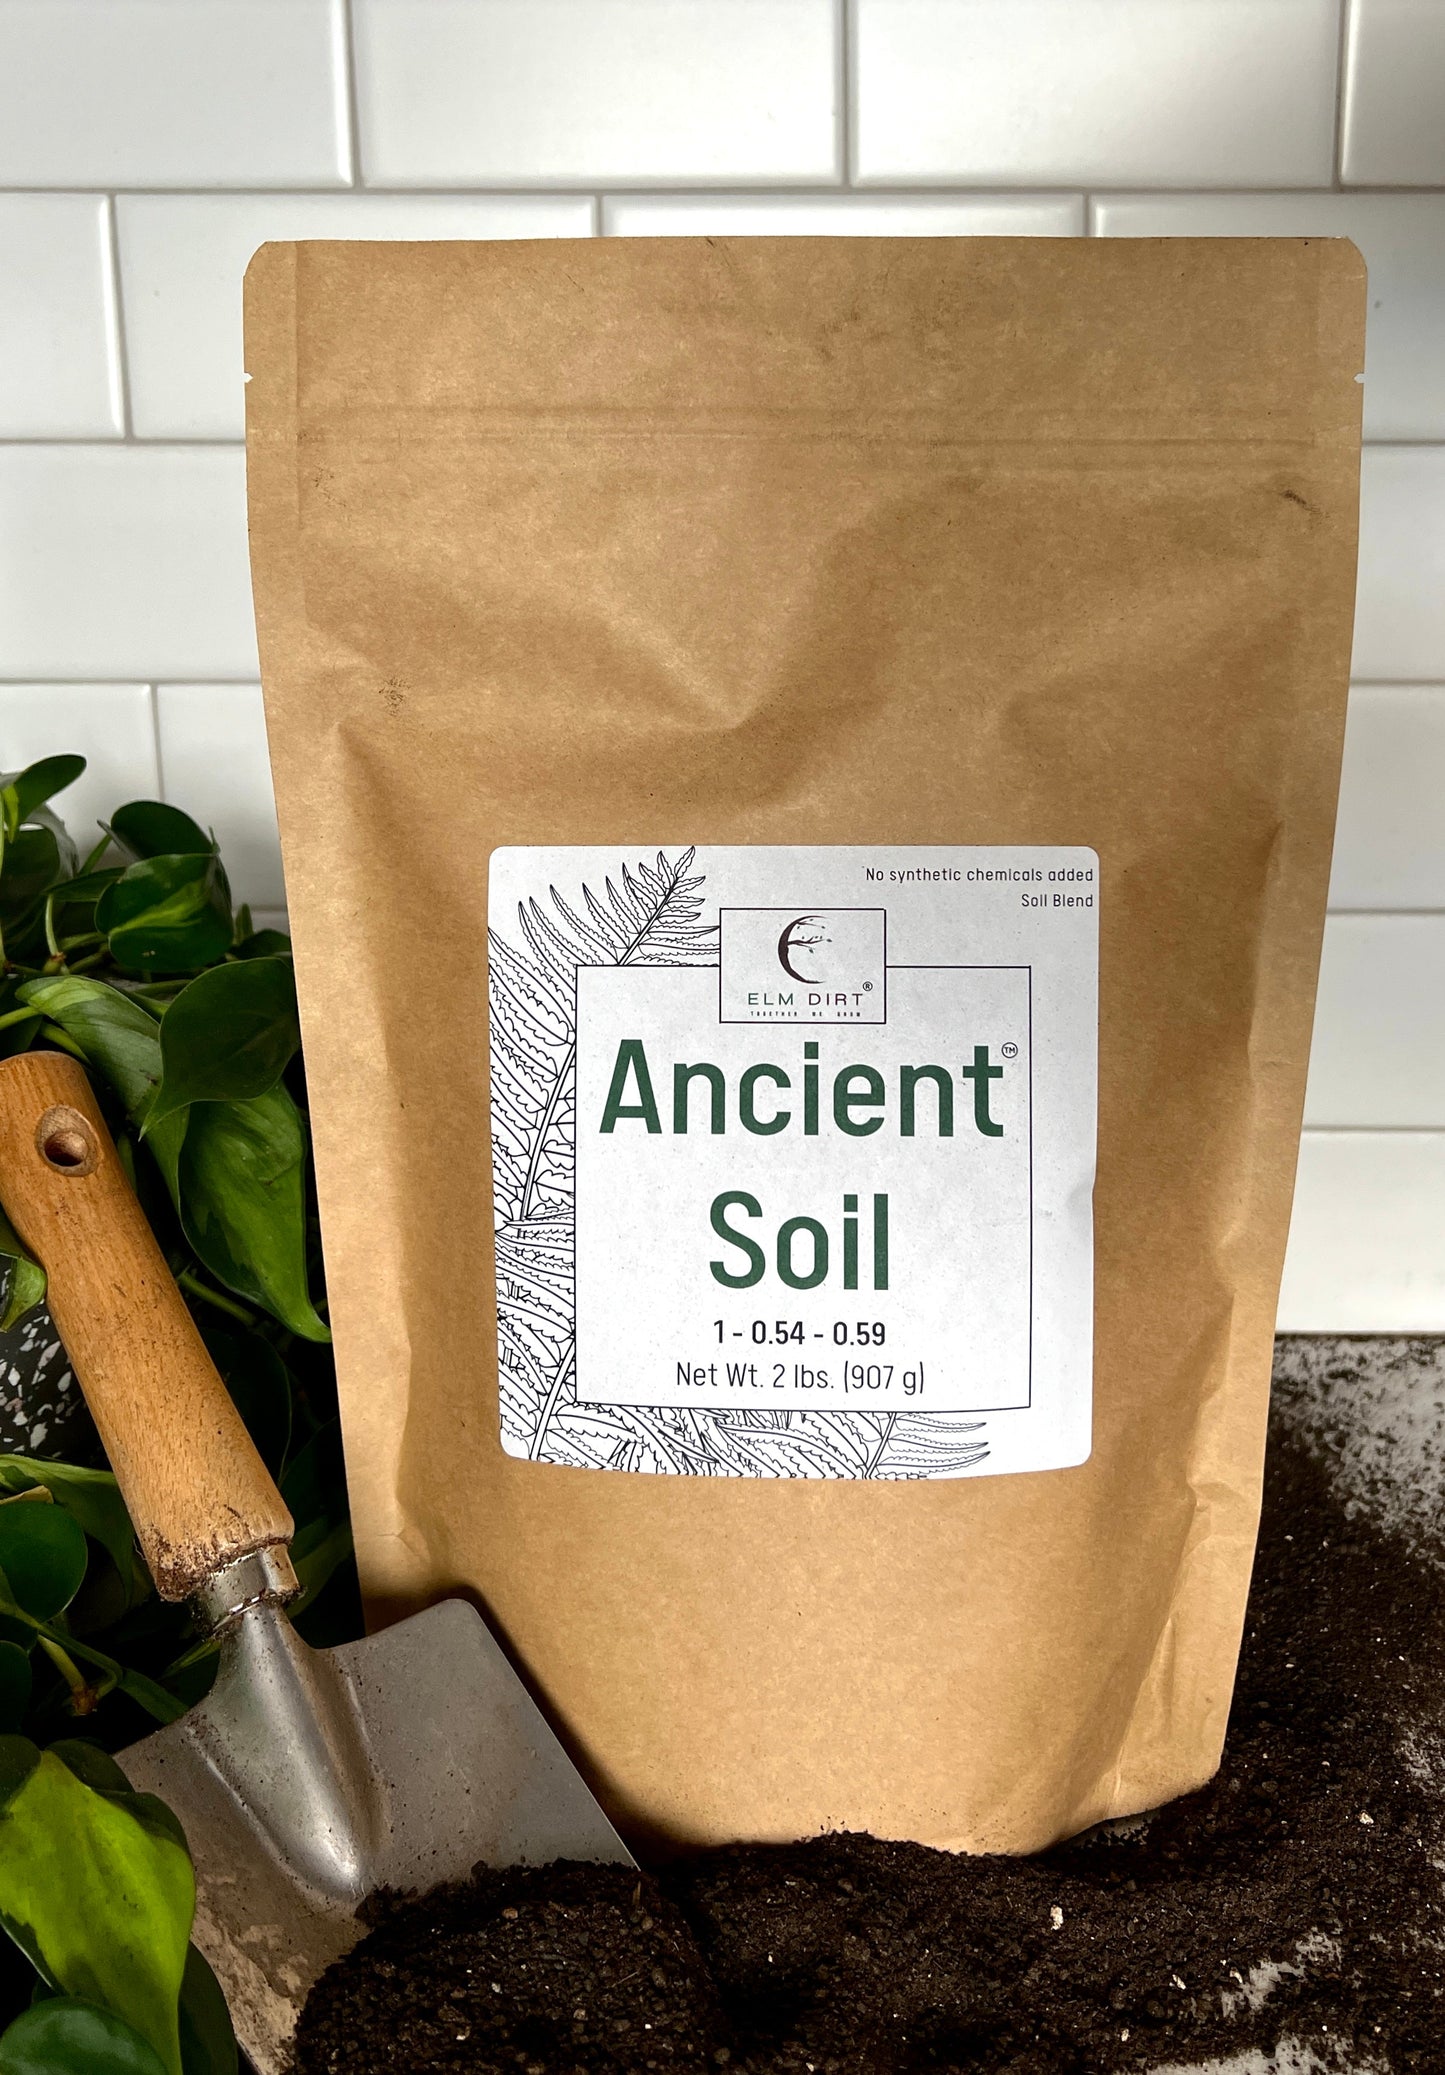 Ancient Soil by Elm Dirt